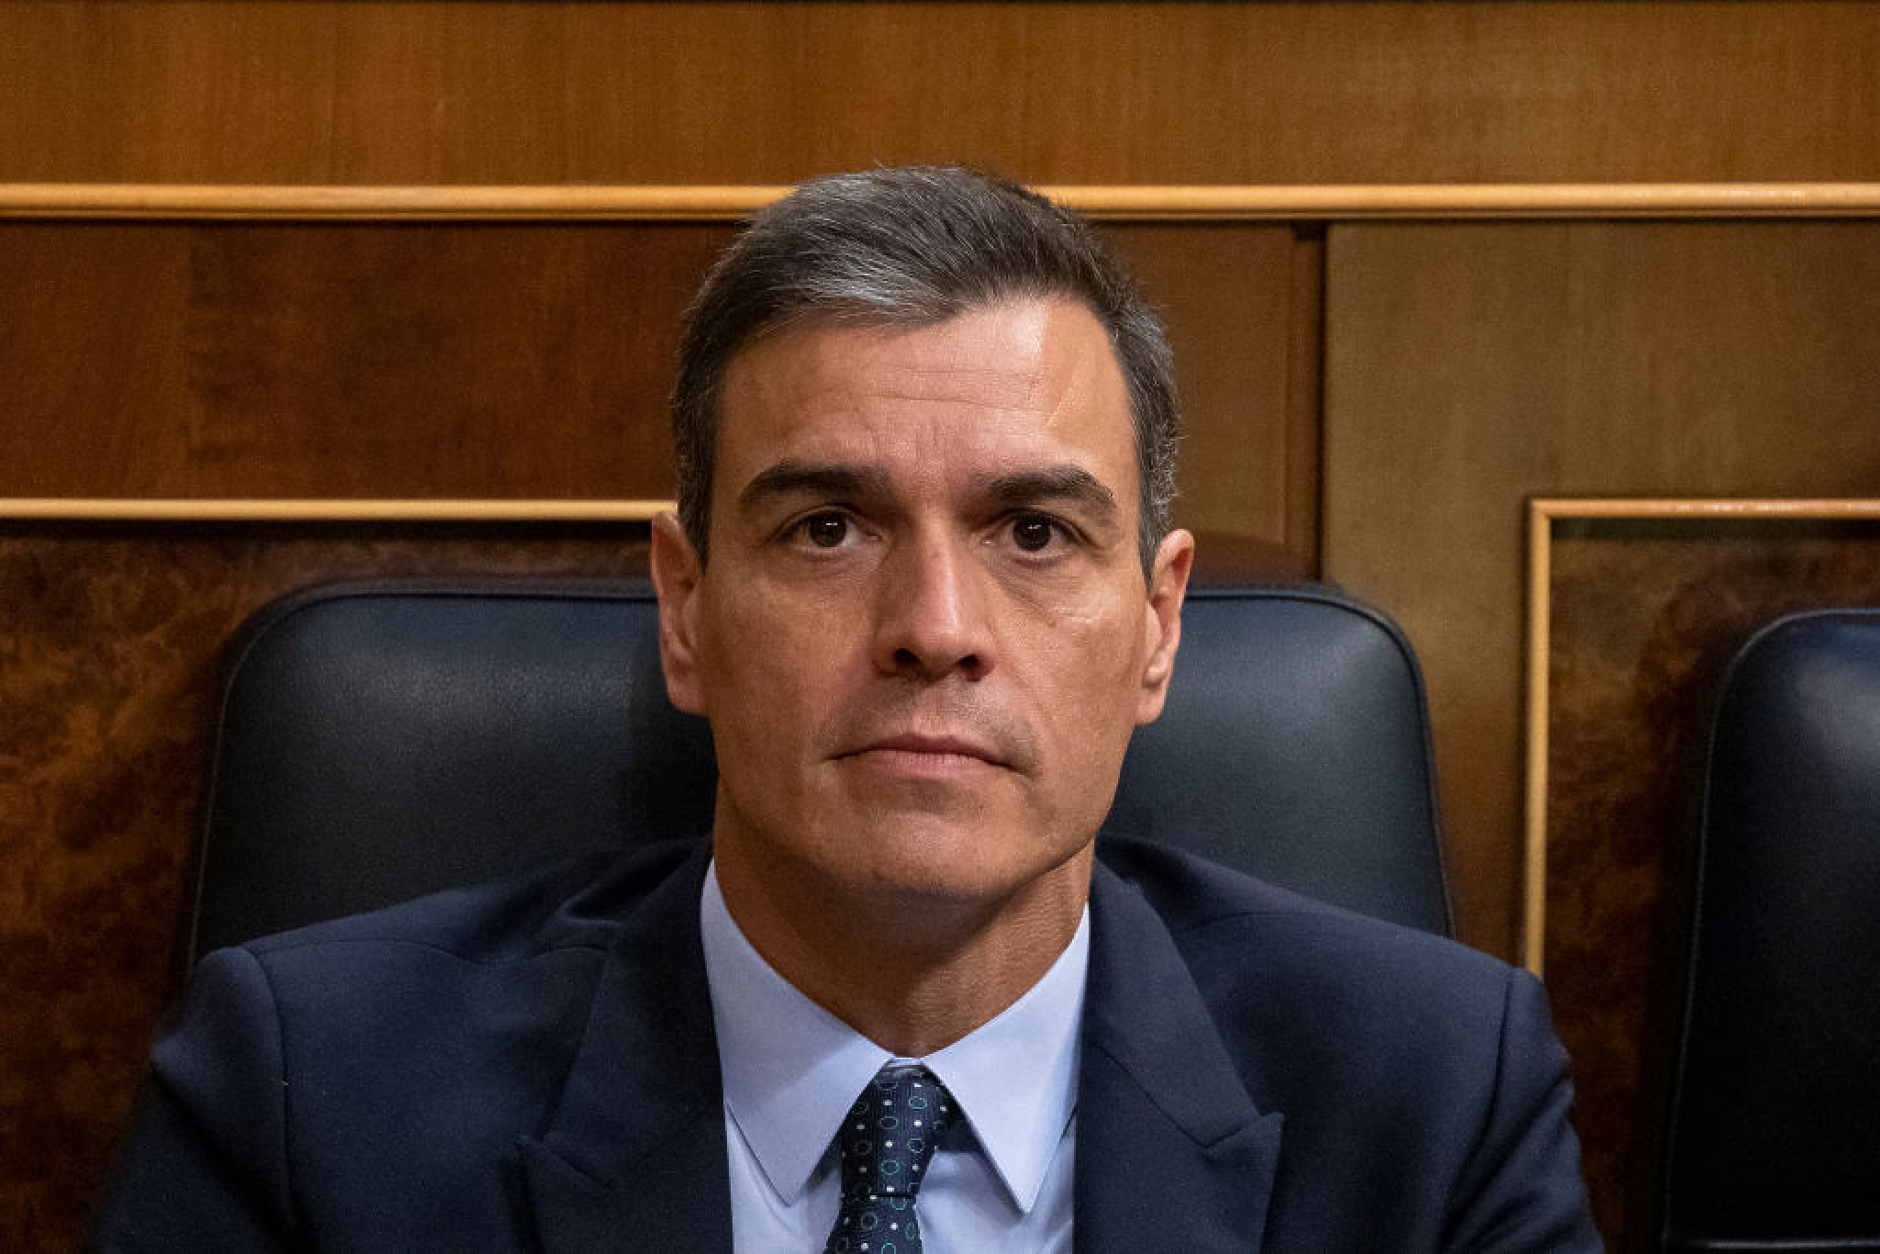 Педро Санчес получи мандат за съставяне на правителство в Испания